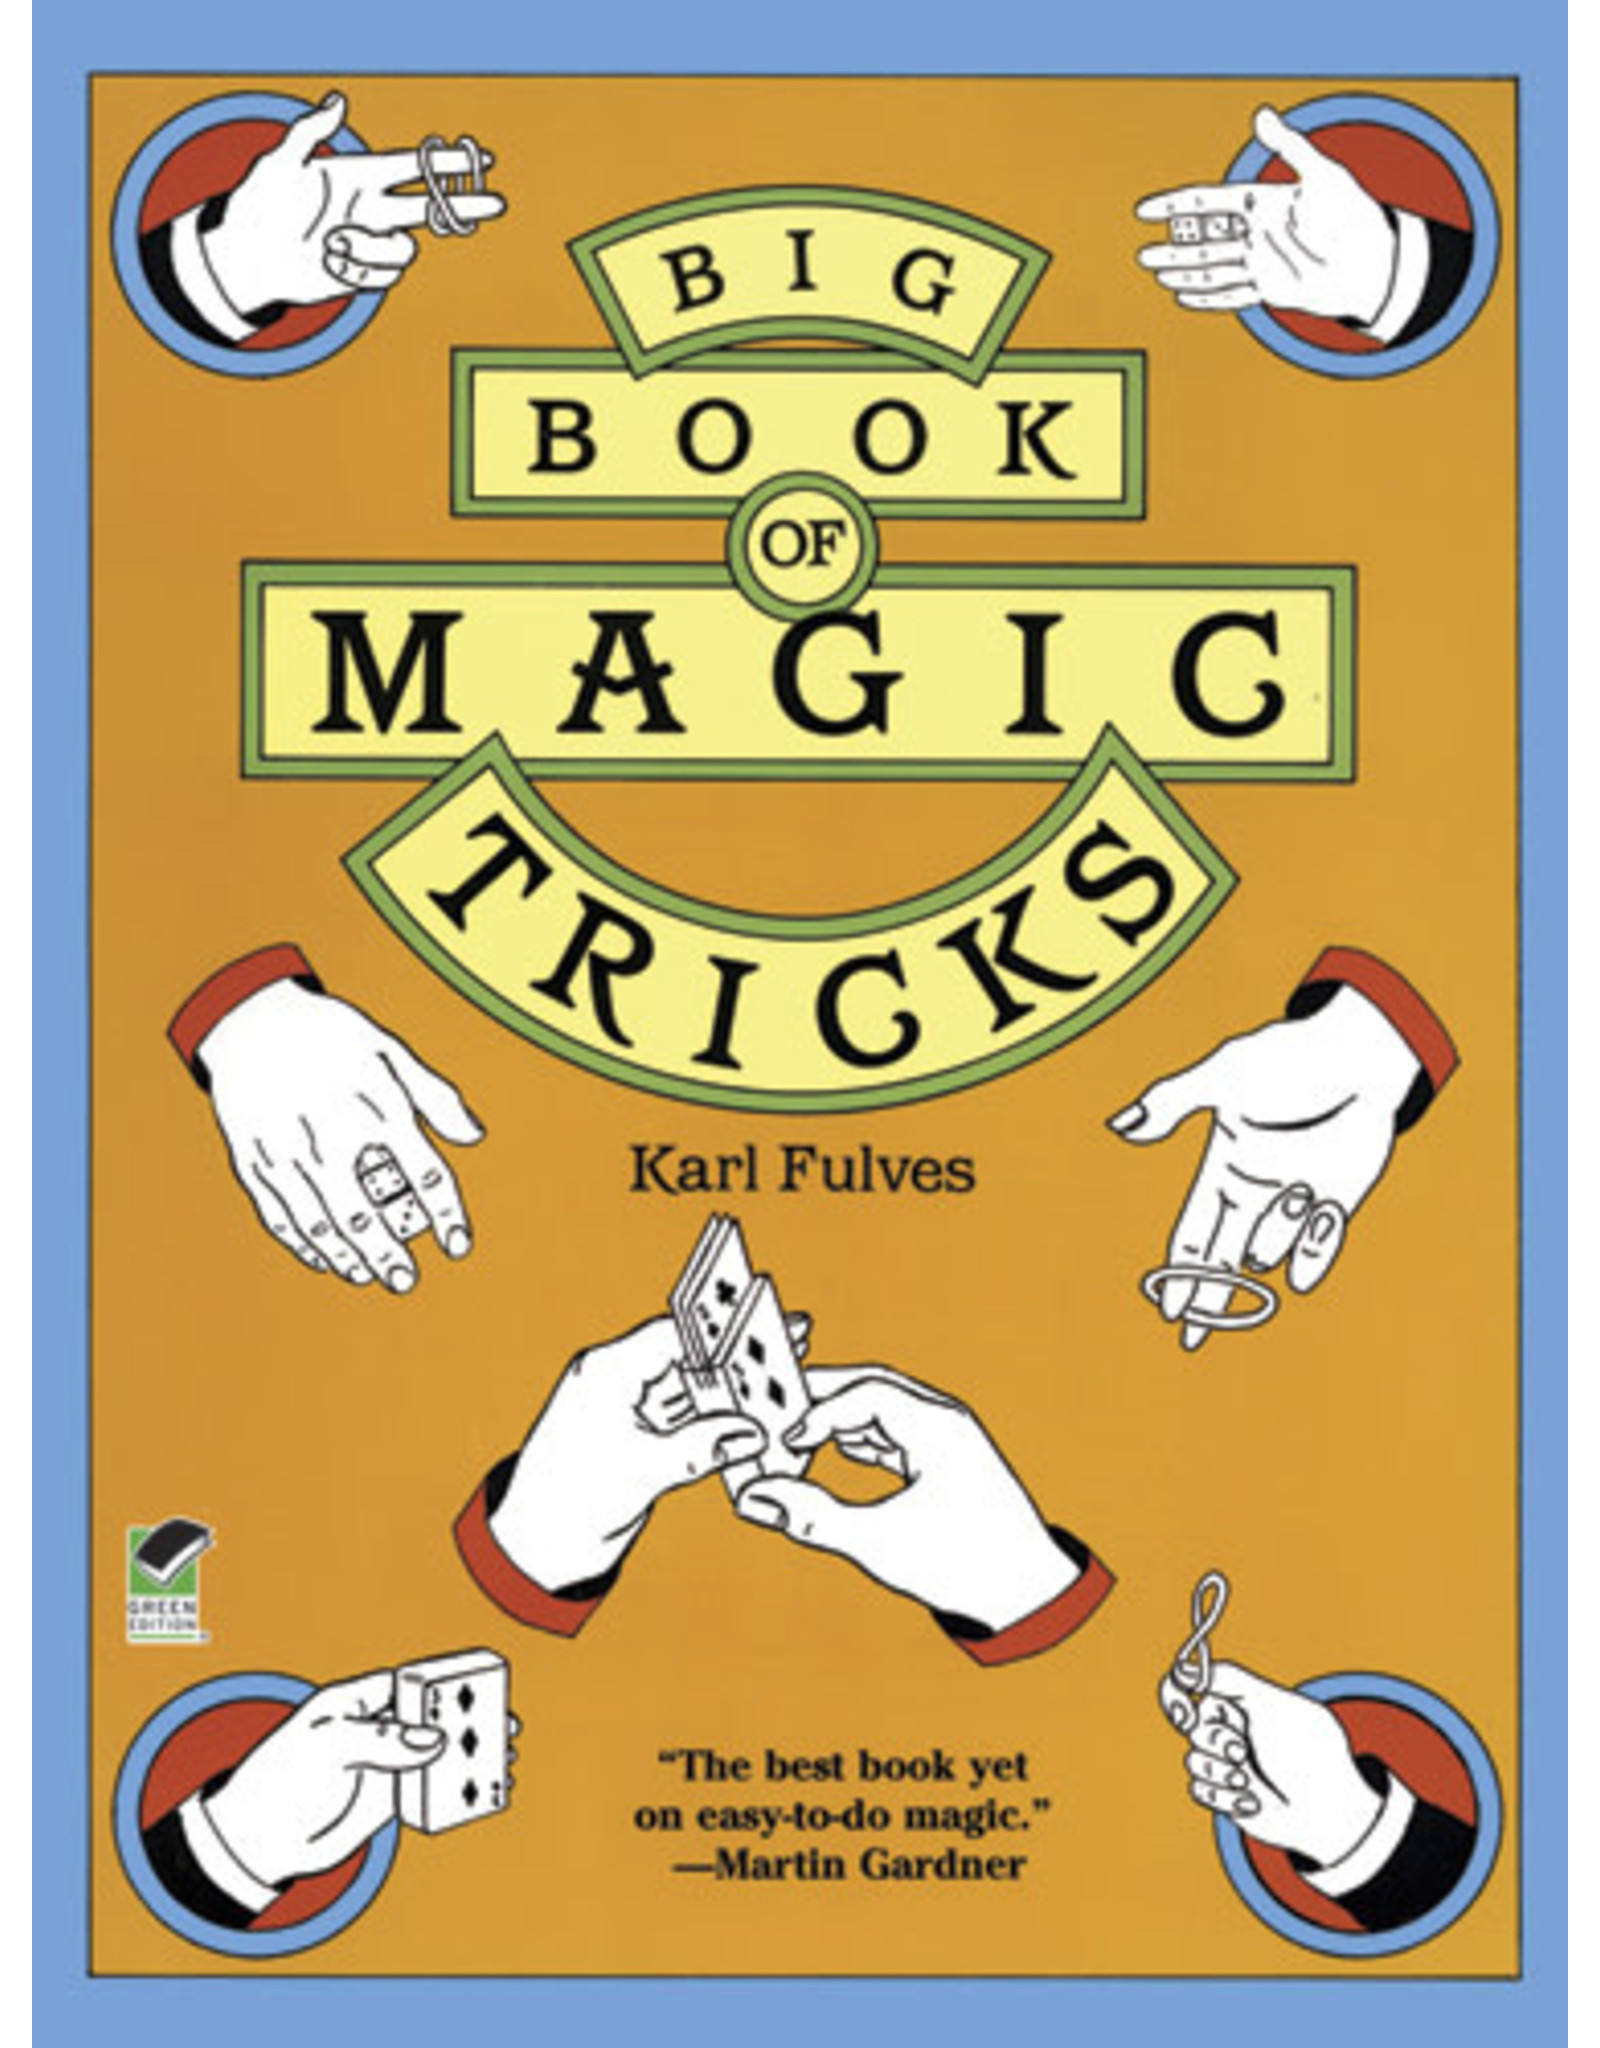 Big Book of Magic Tricks - Karl Fulves